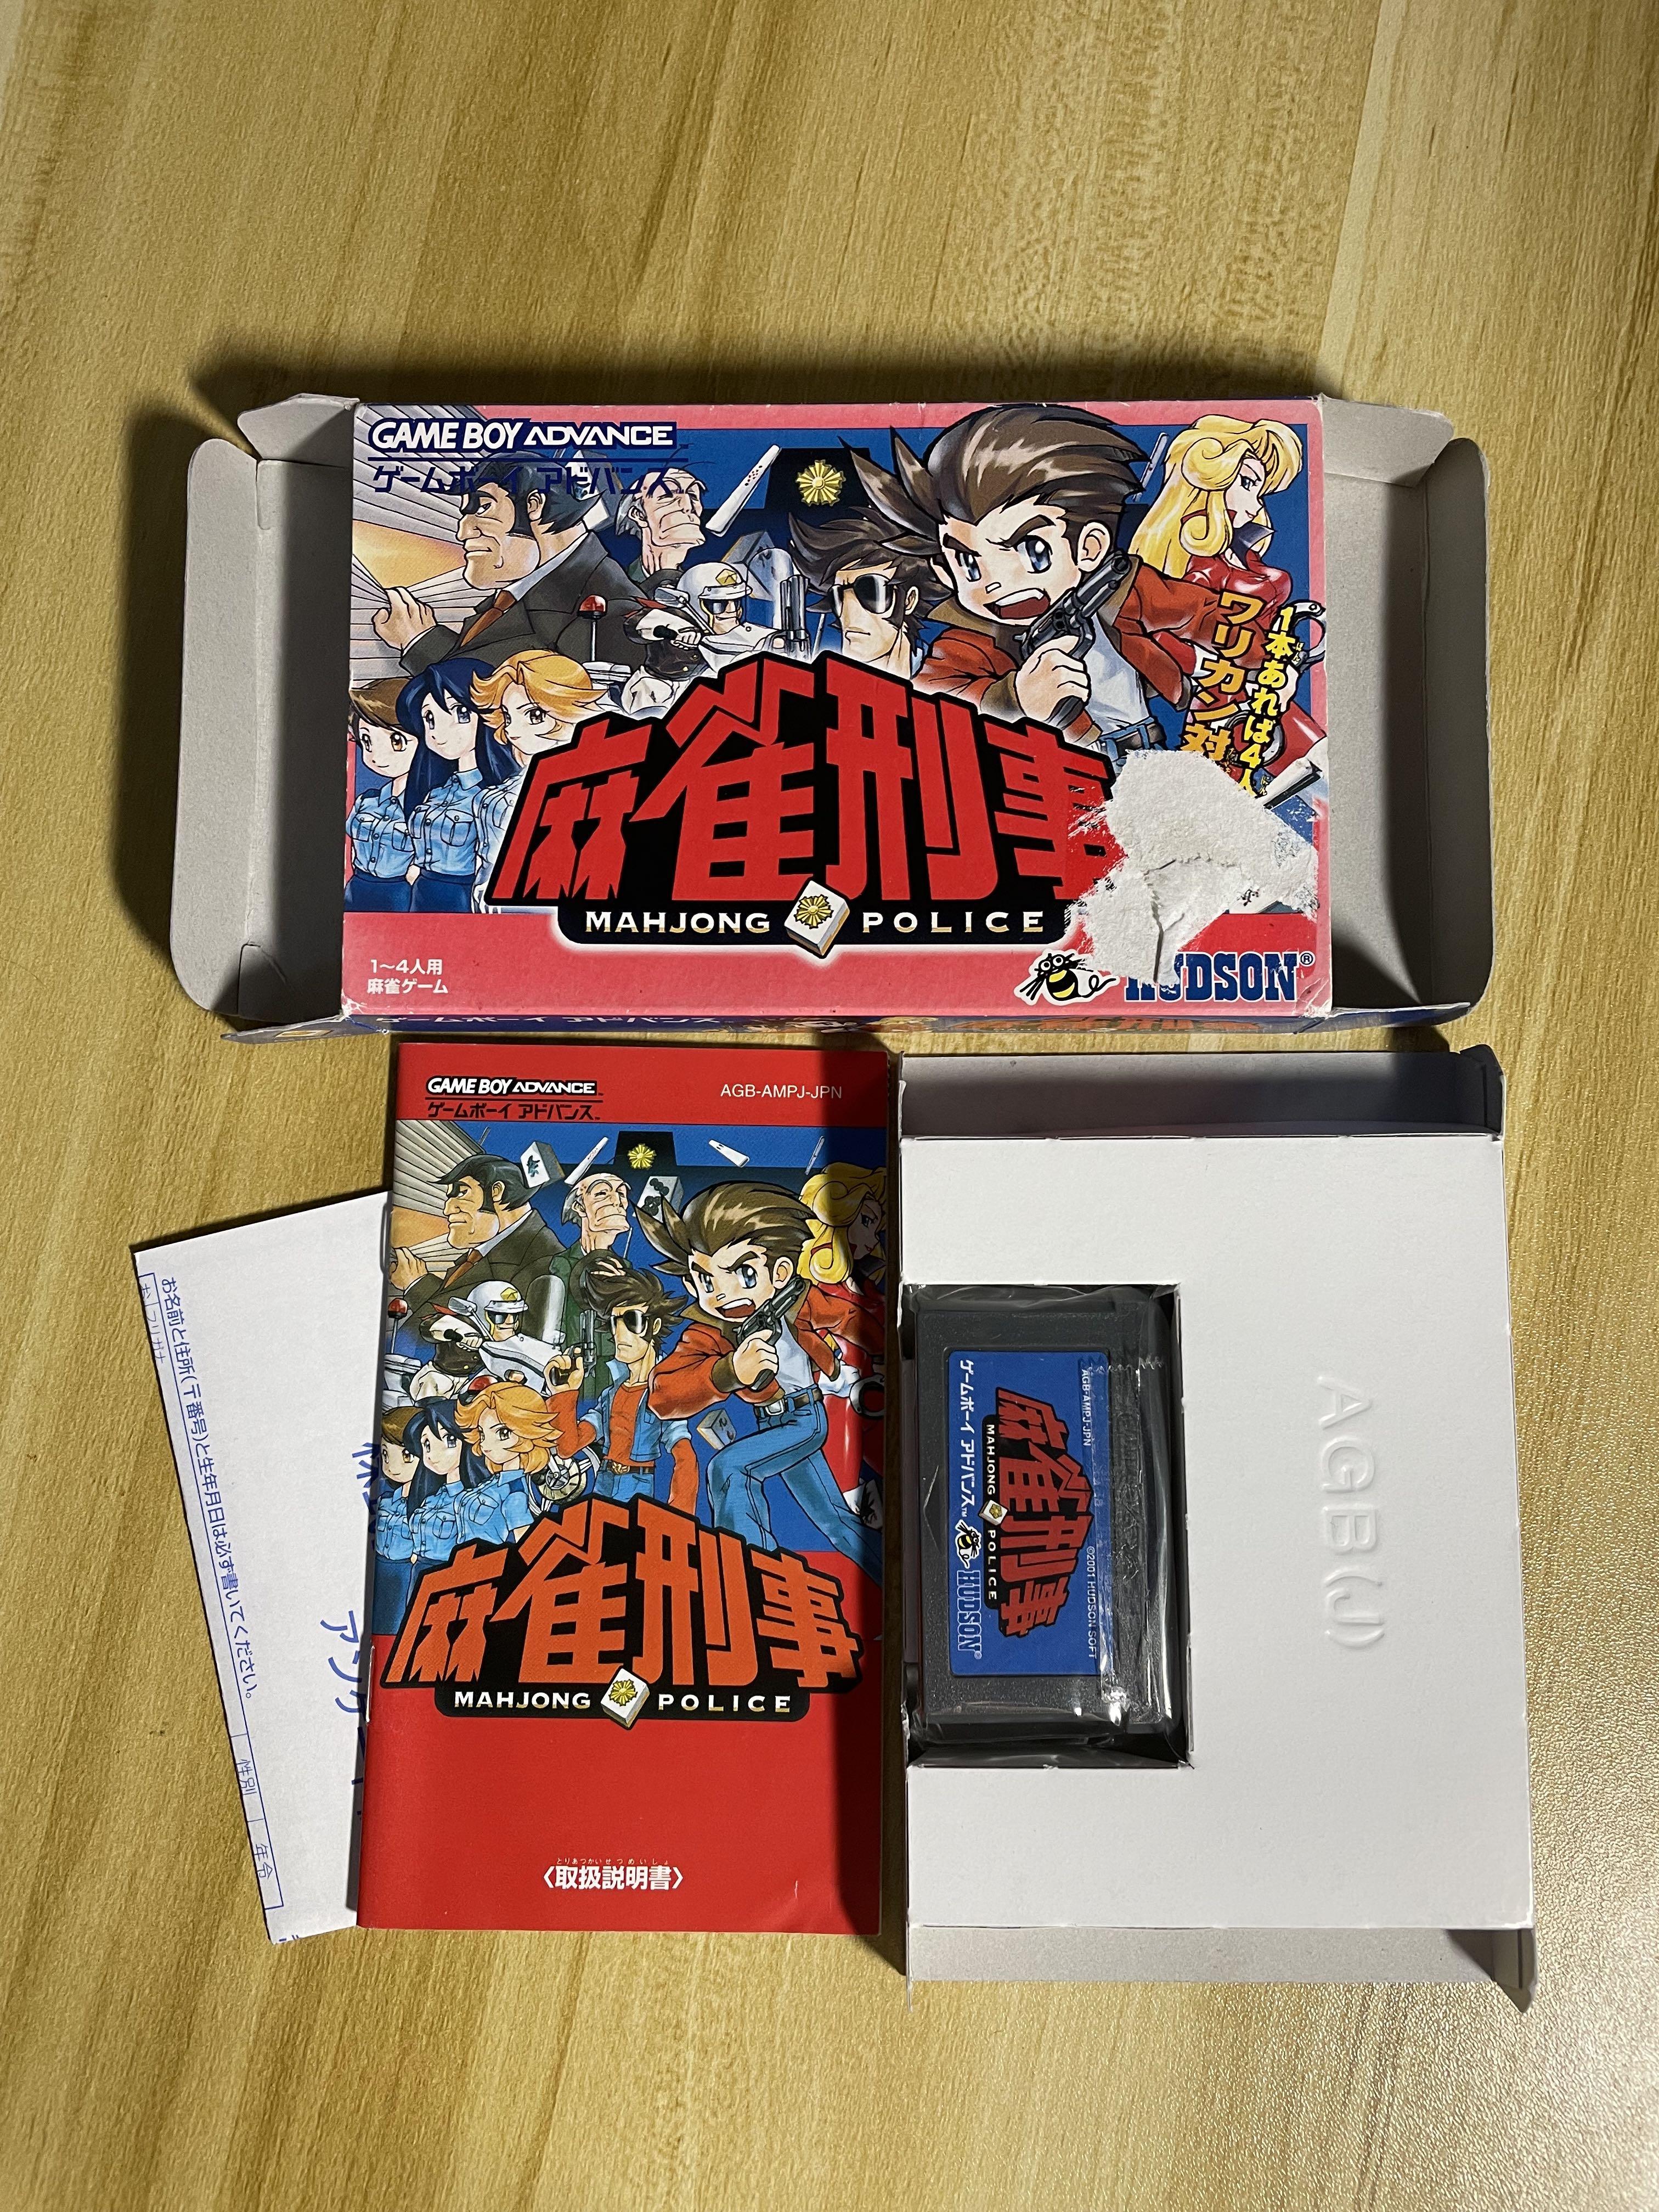 中古絕版GBA Gameboy Advance 麻雀刑事ゲームボーイアドバンスMAHJONG